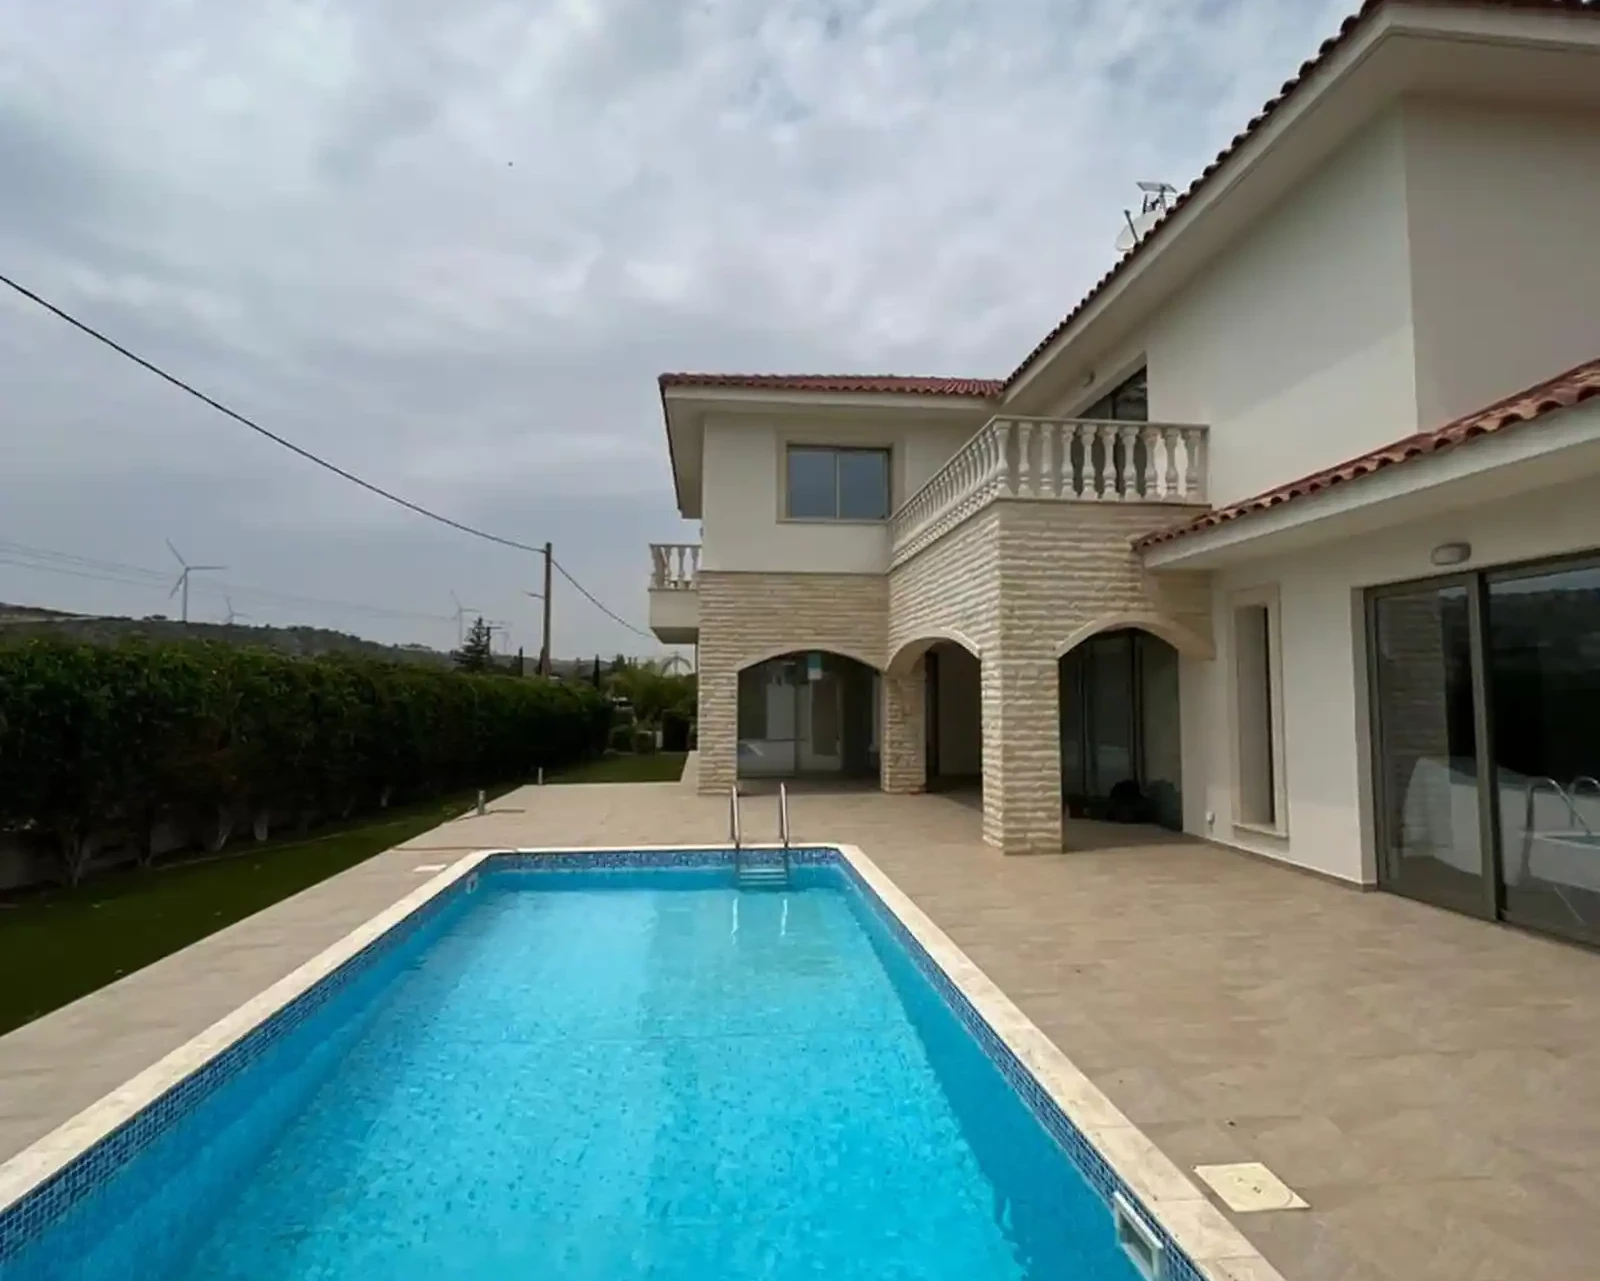 5-bedroom villa to rent €2.500, image 1